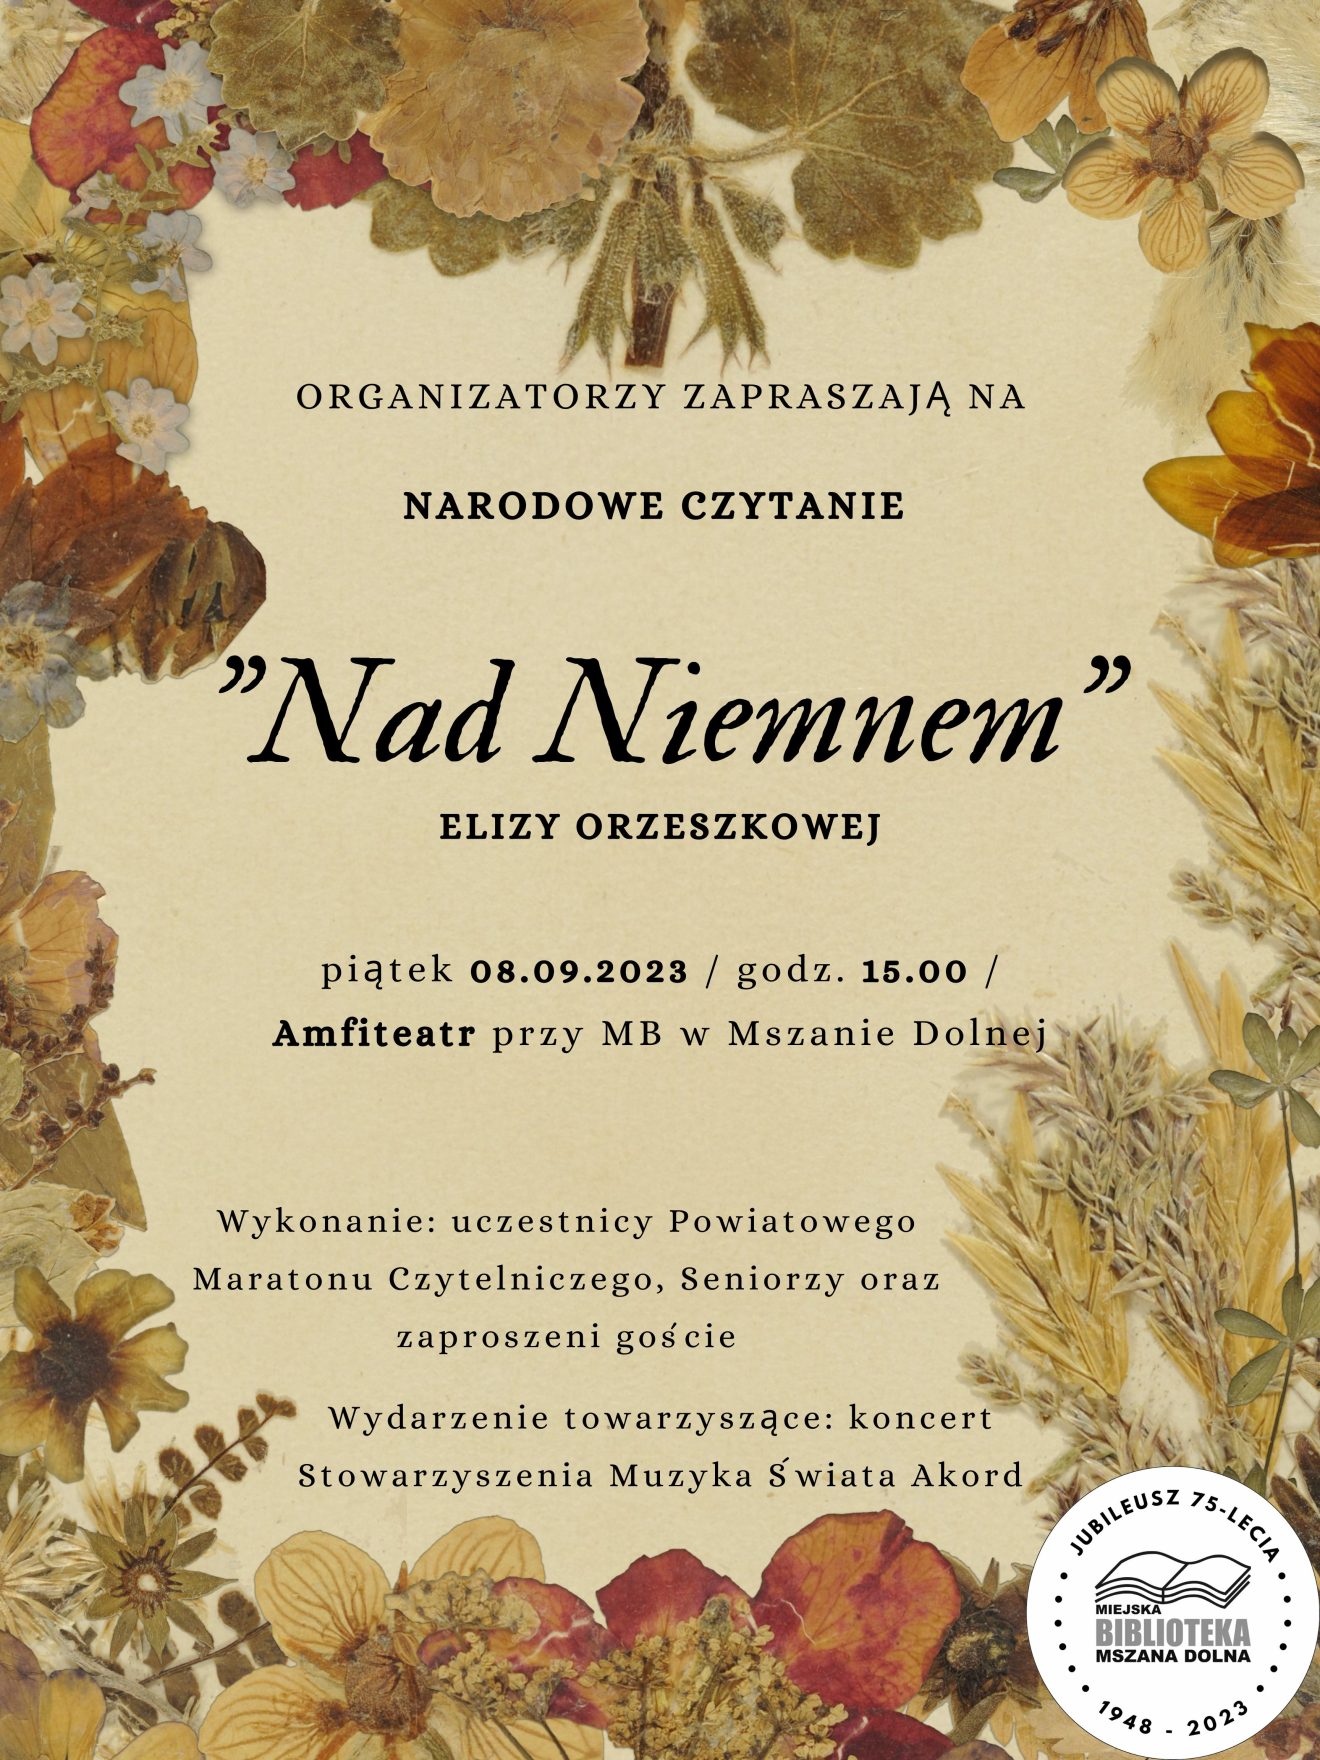 Plakat z motywami suszonej roślinności, promujący wydarzenie "Narodowe czytanie Nad Niemnem", które odbędzie się w dniu 08.09.2023 o godzinie 15:00 w naszym Amfiteatrze.